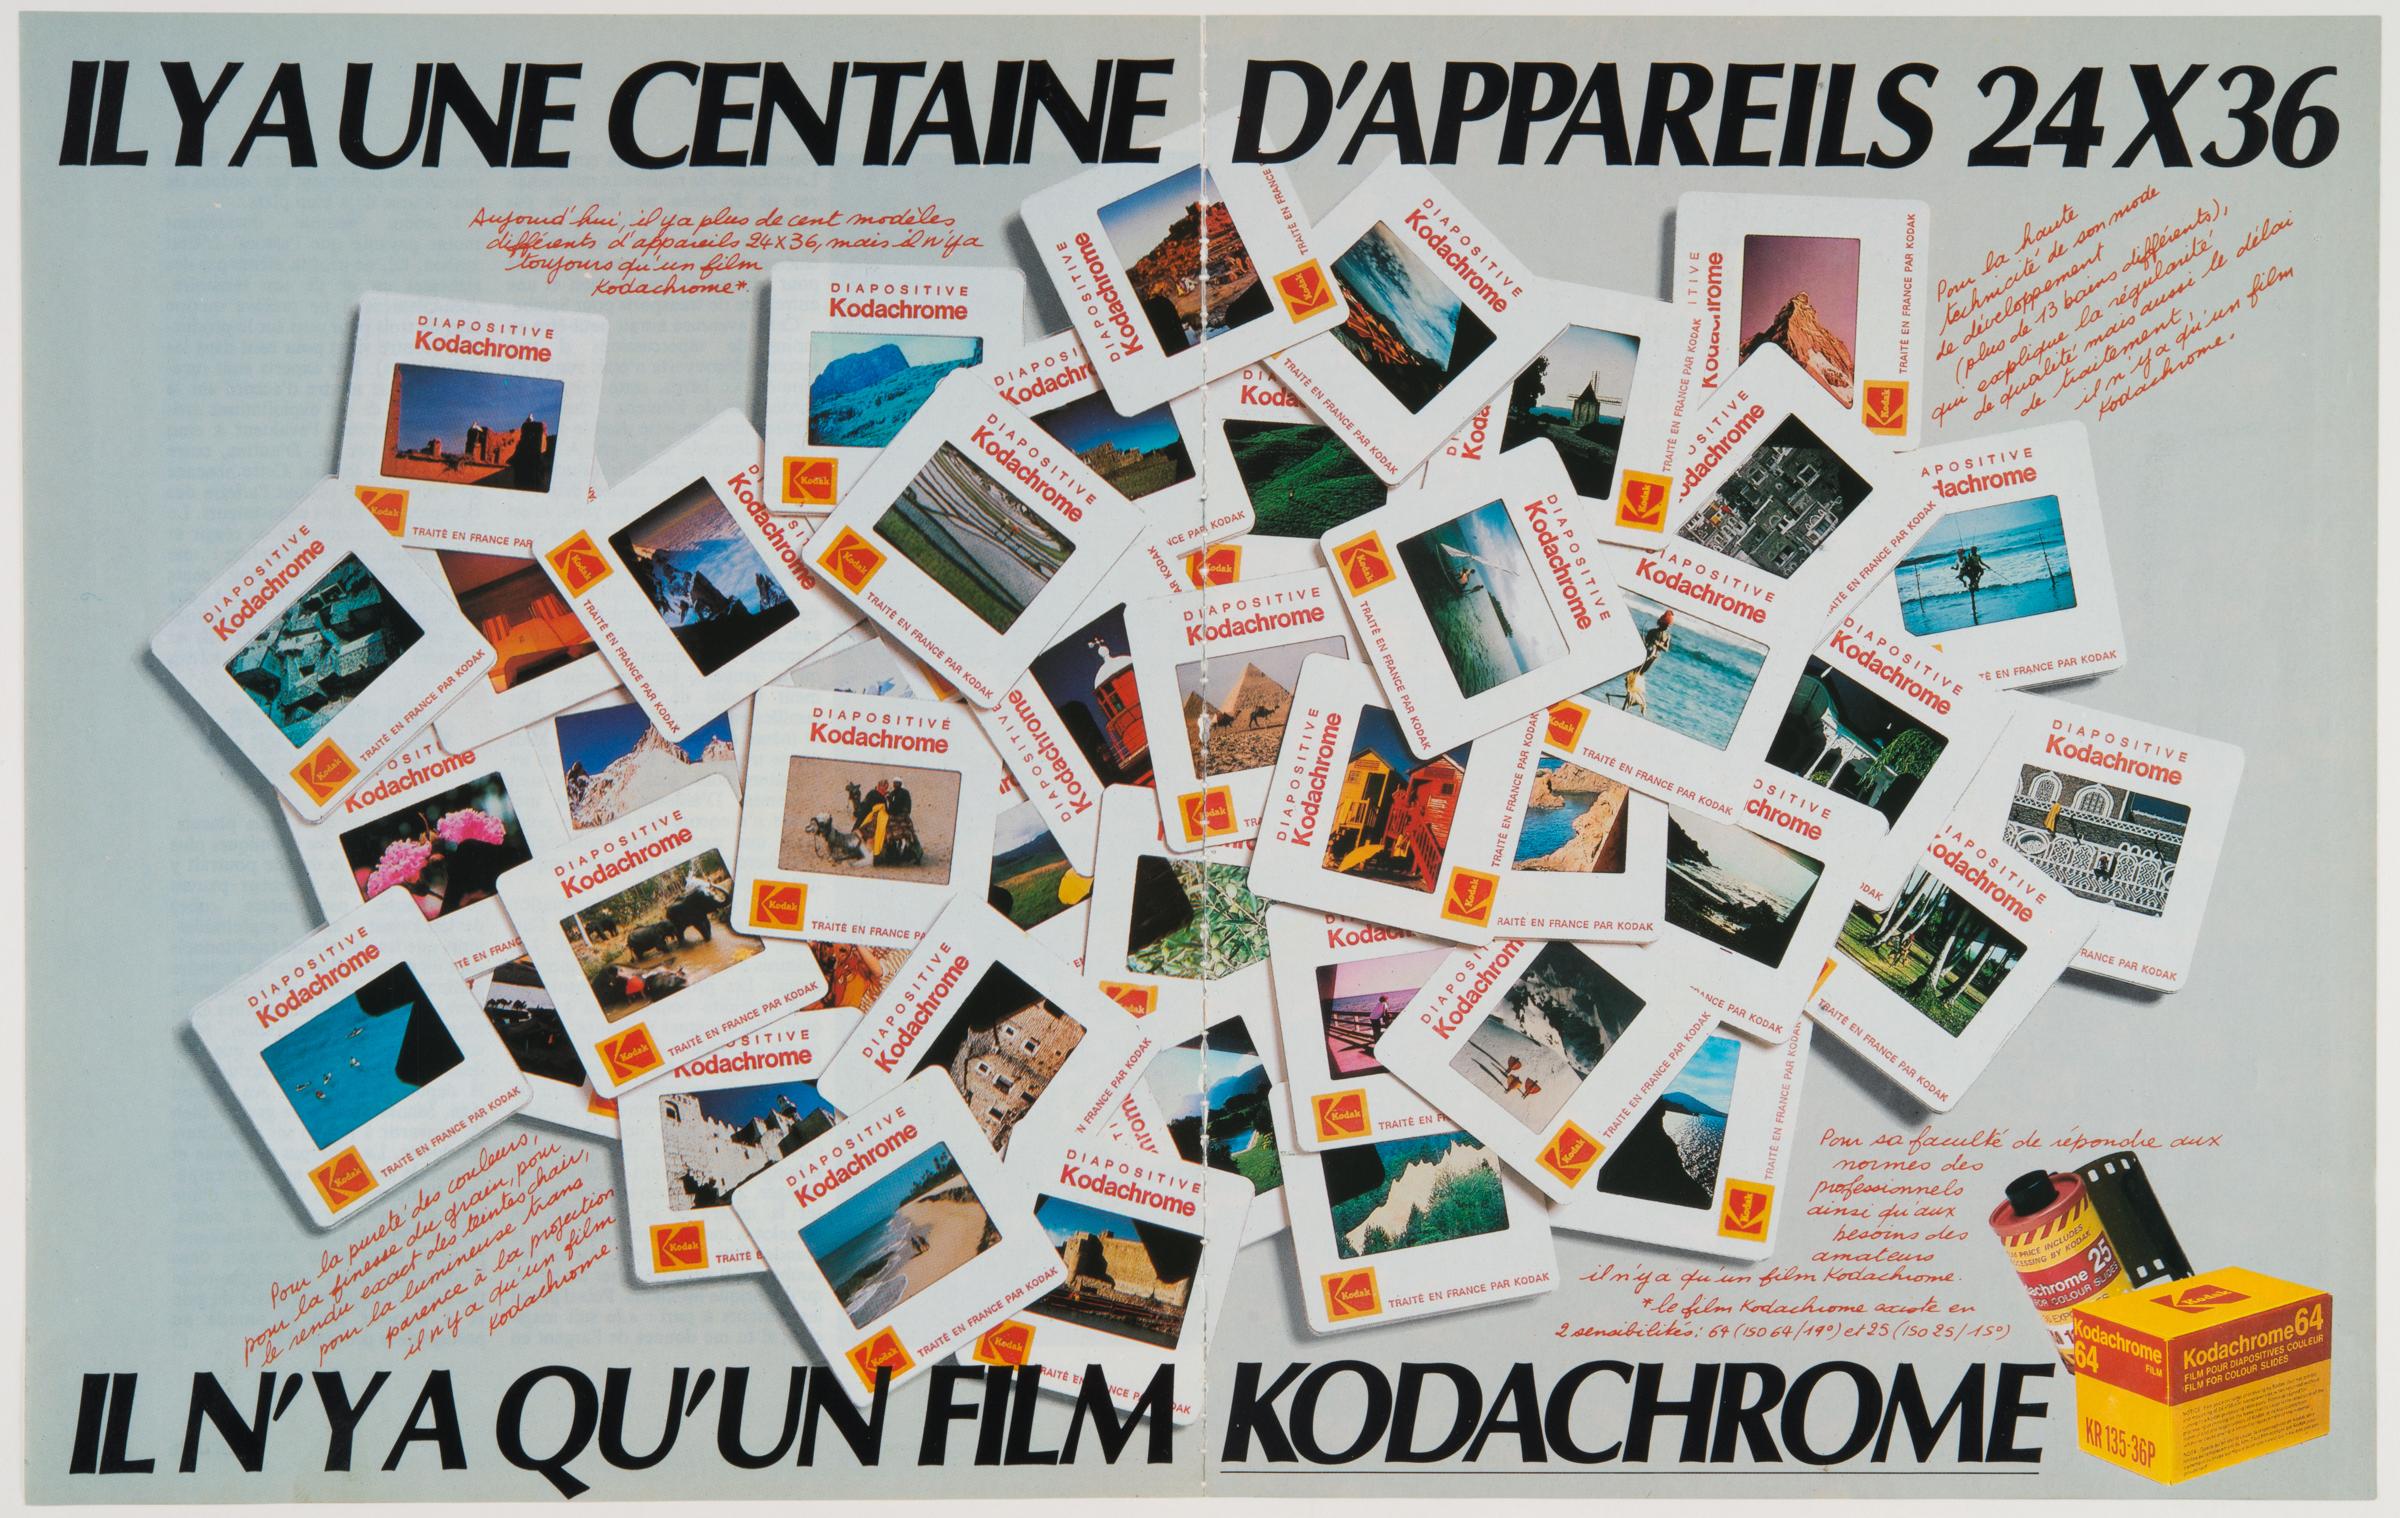 Publicité Kodak pour le film Kodachrome (1982). [Kodak - Musée de l'Elysée, Lausanne]